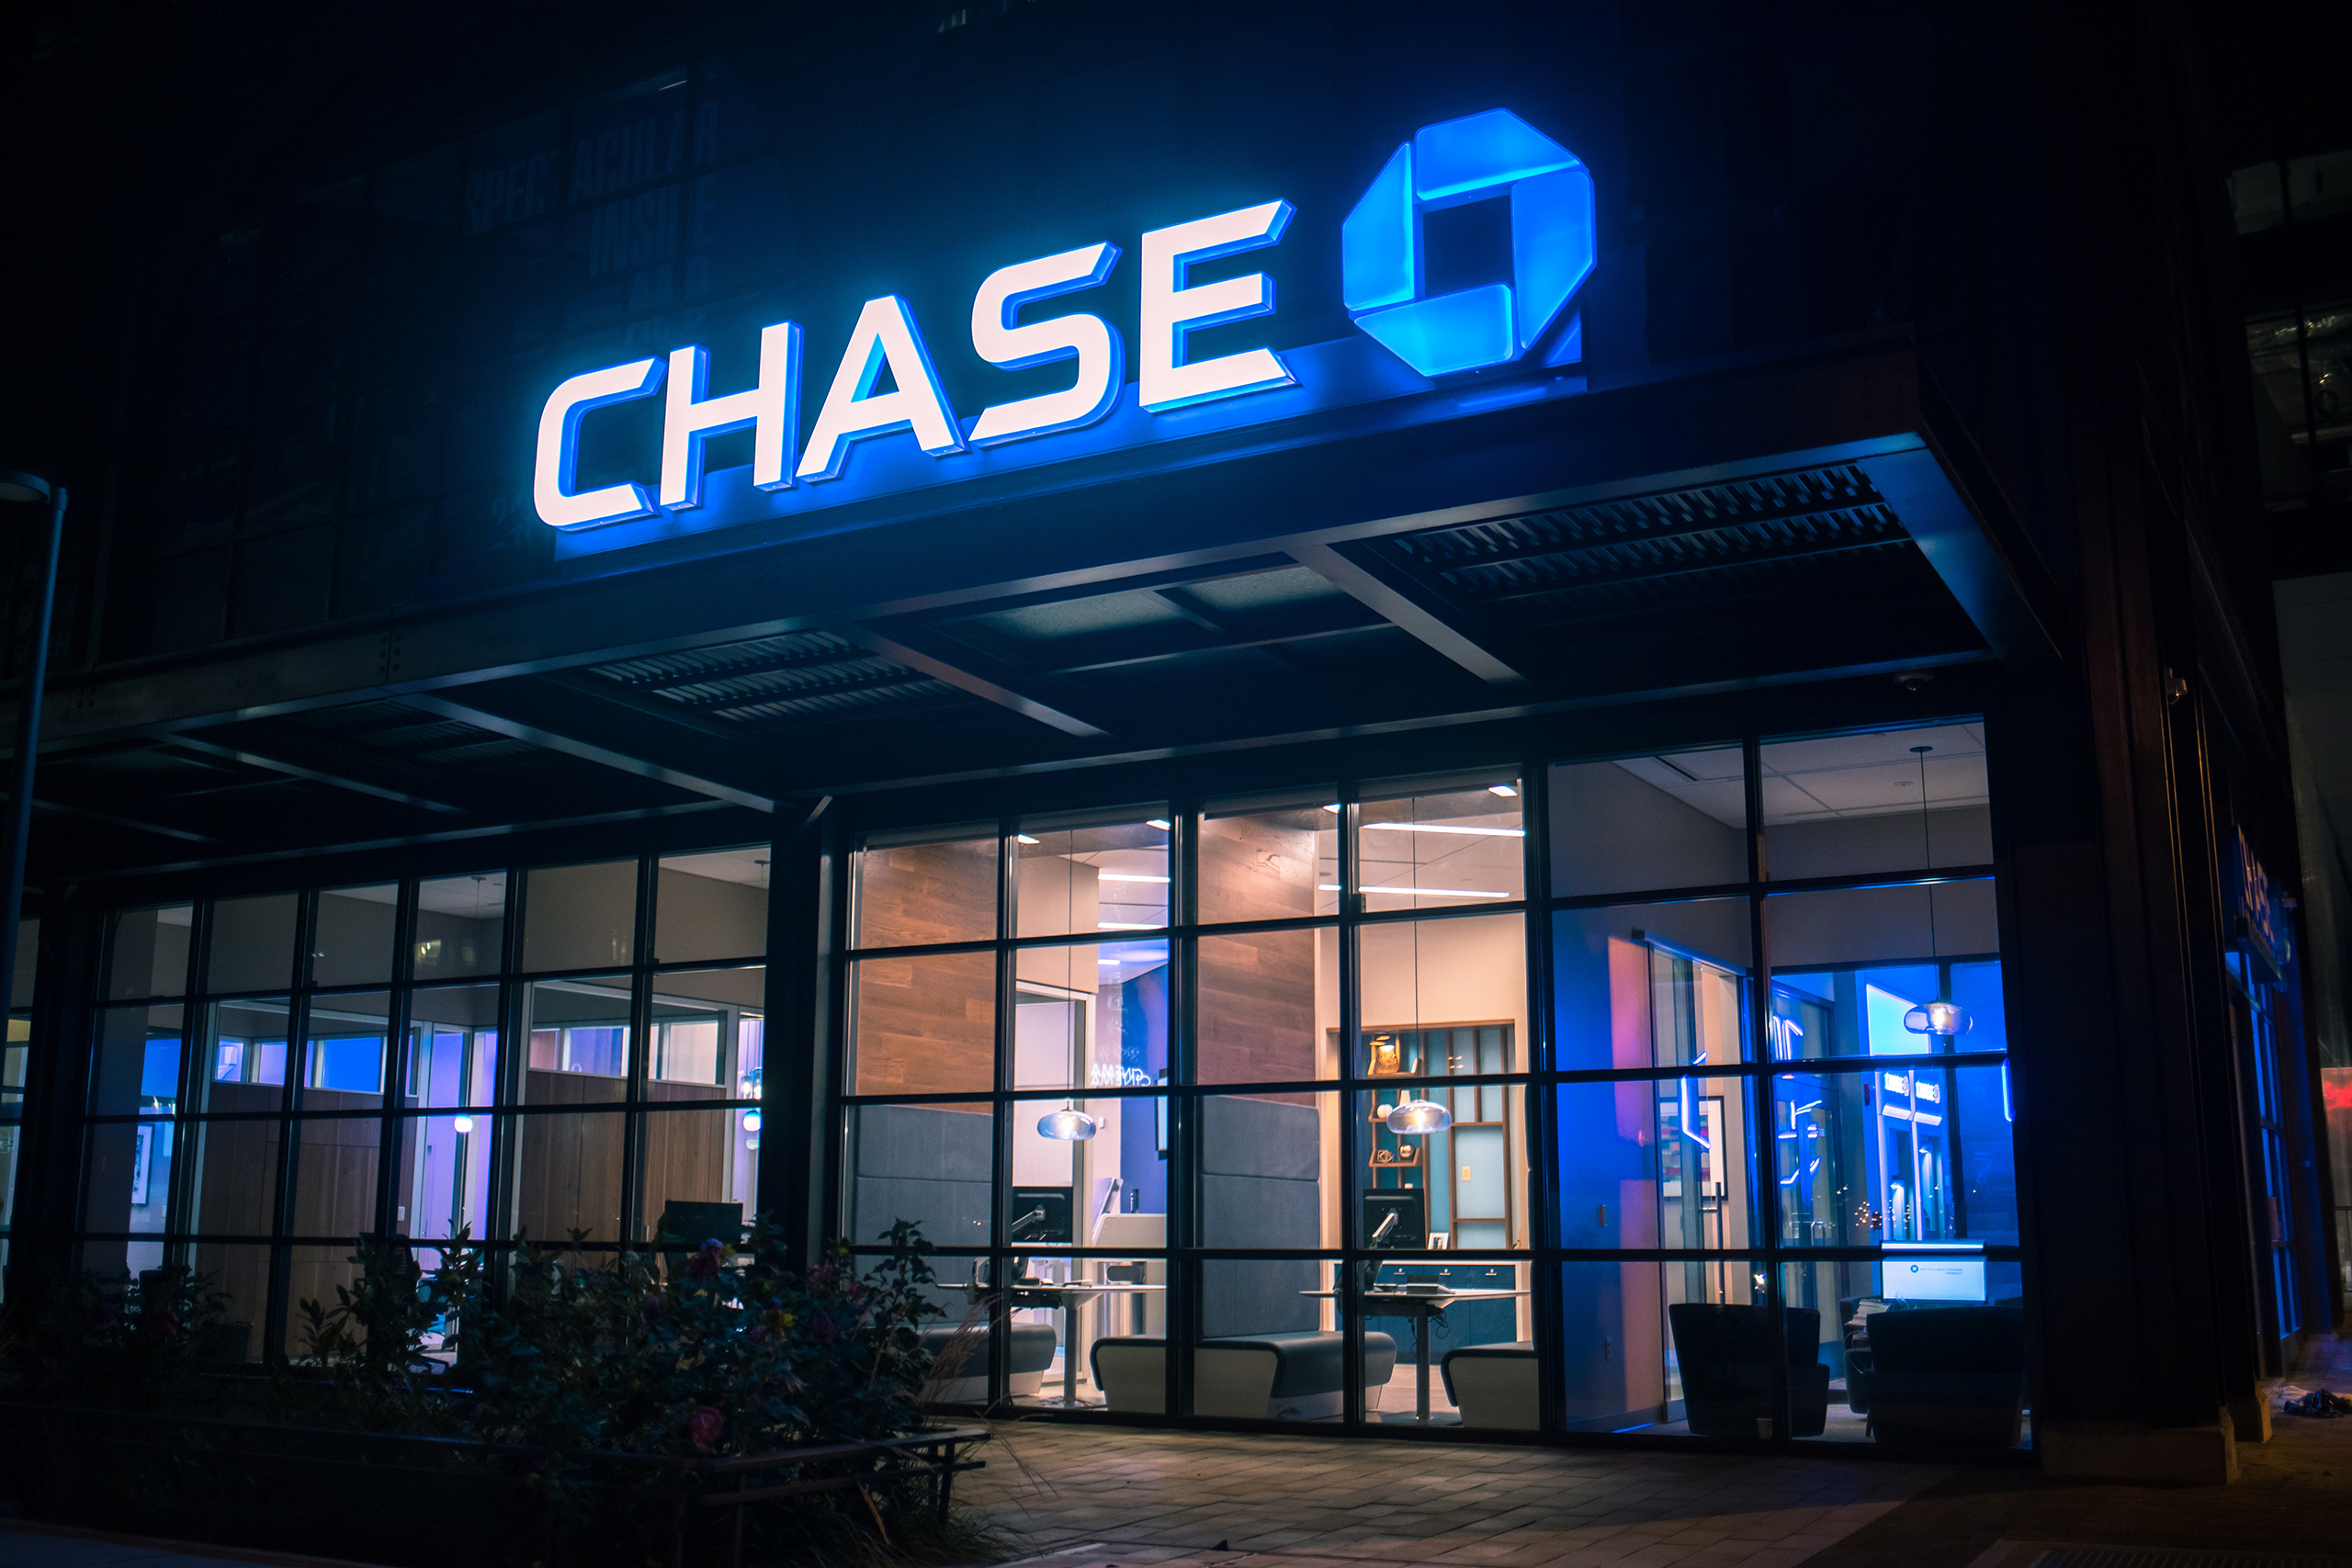 Chase at night